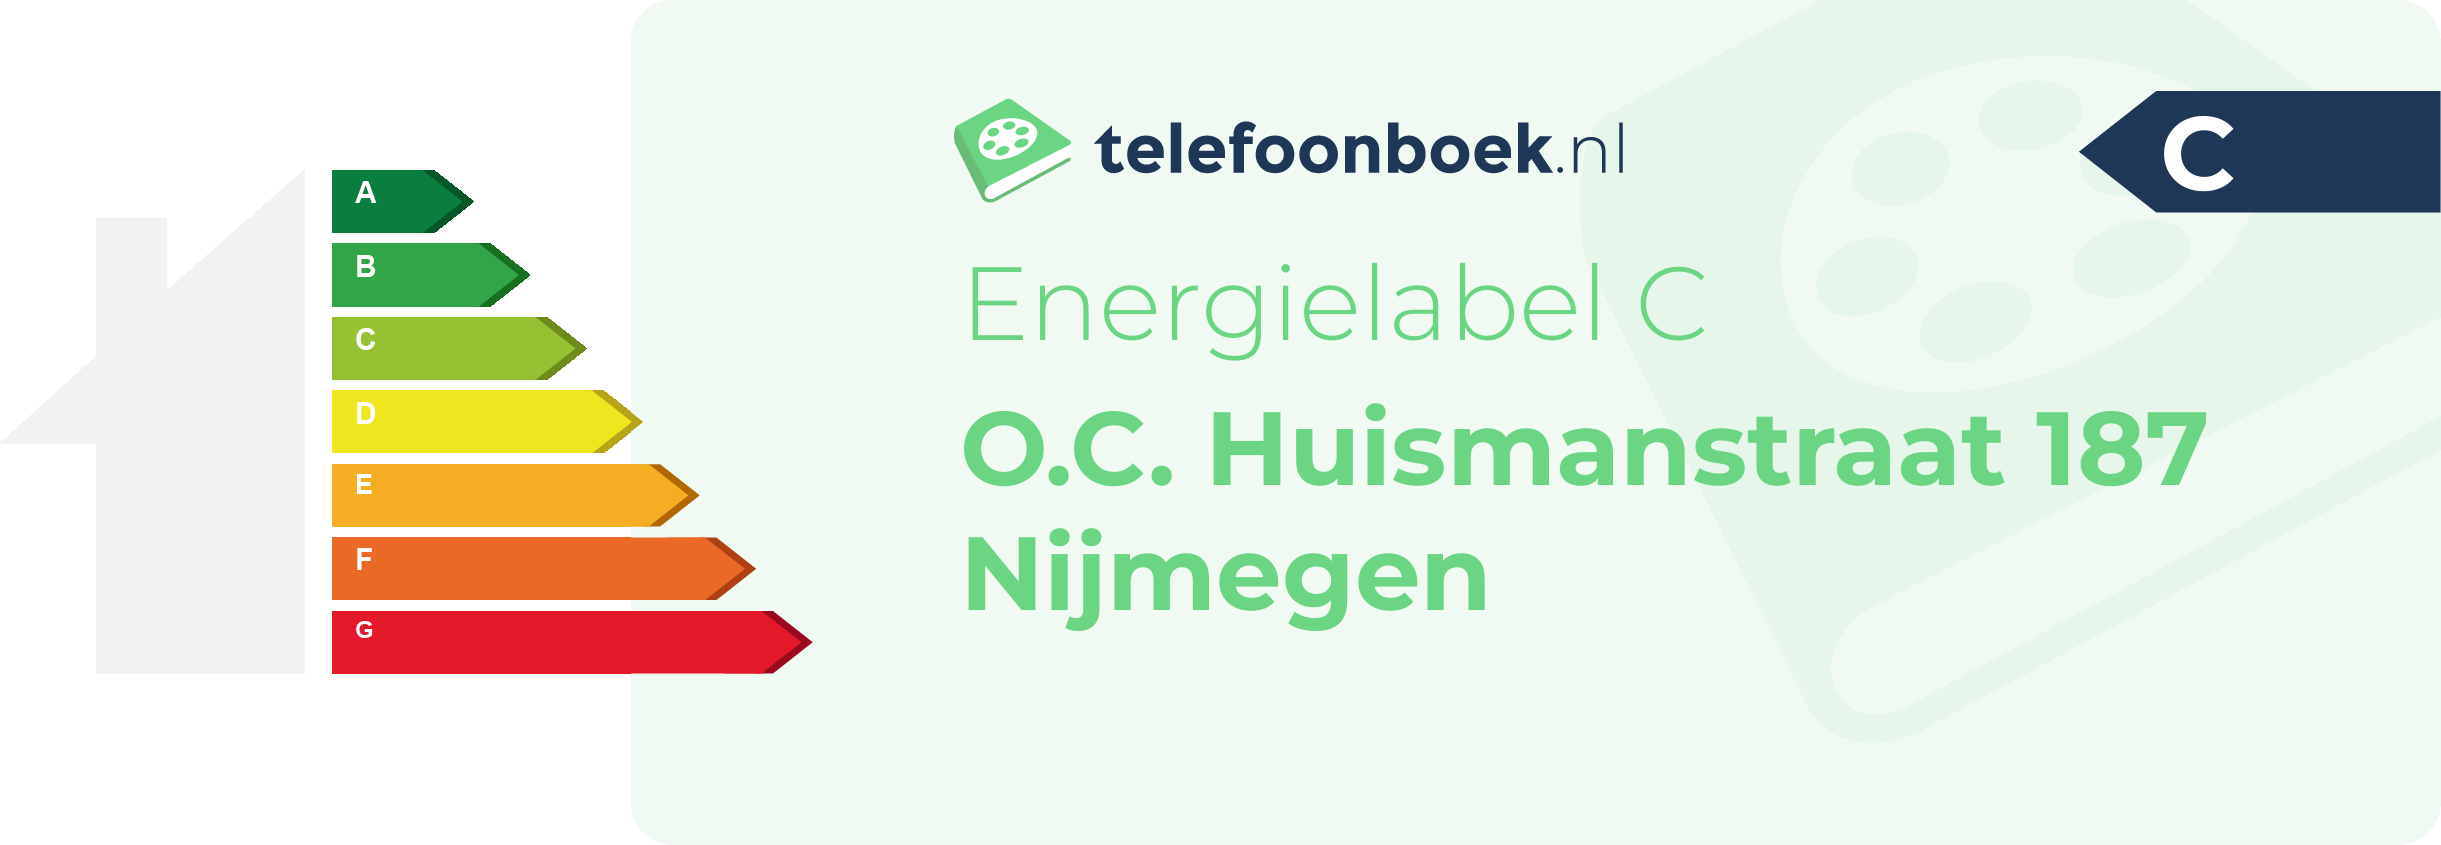 Energielabel O.C. Huismanstraat 187 Nijmegen